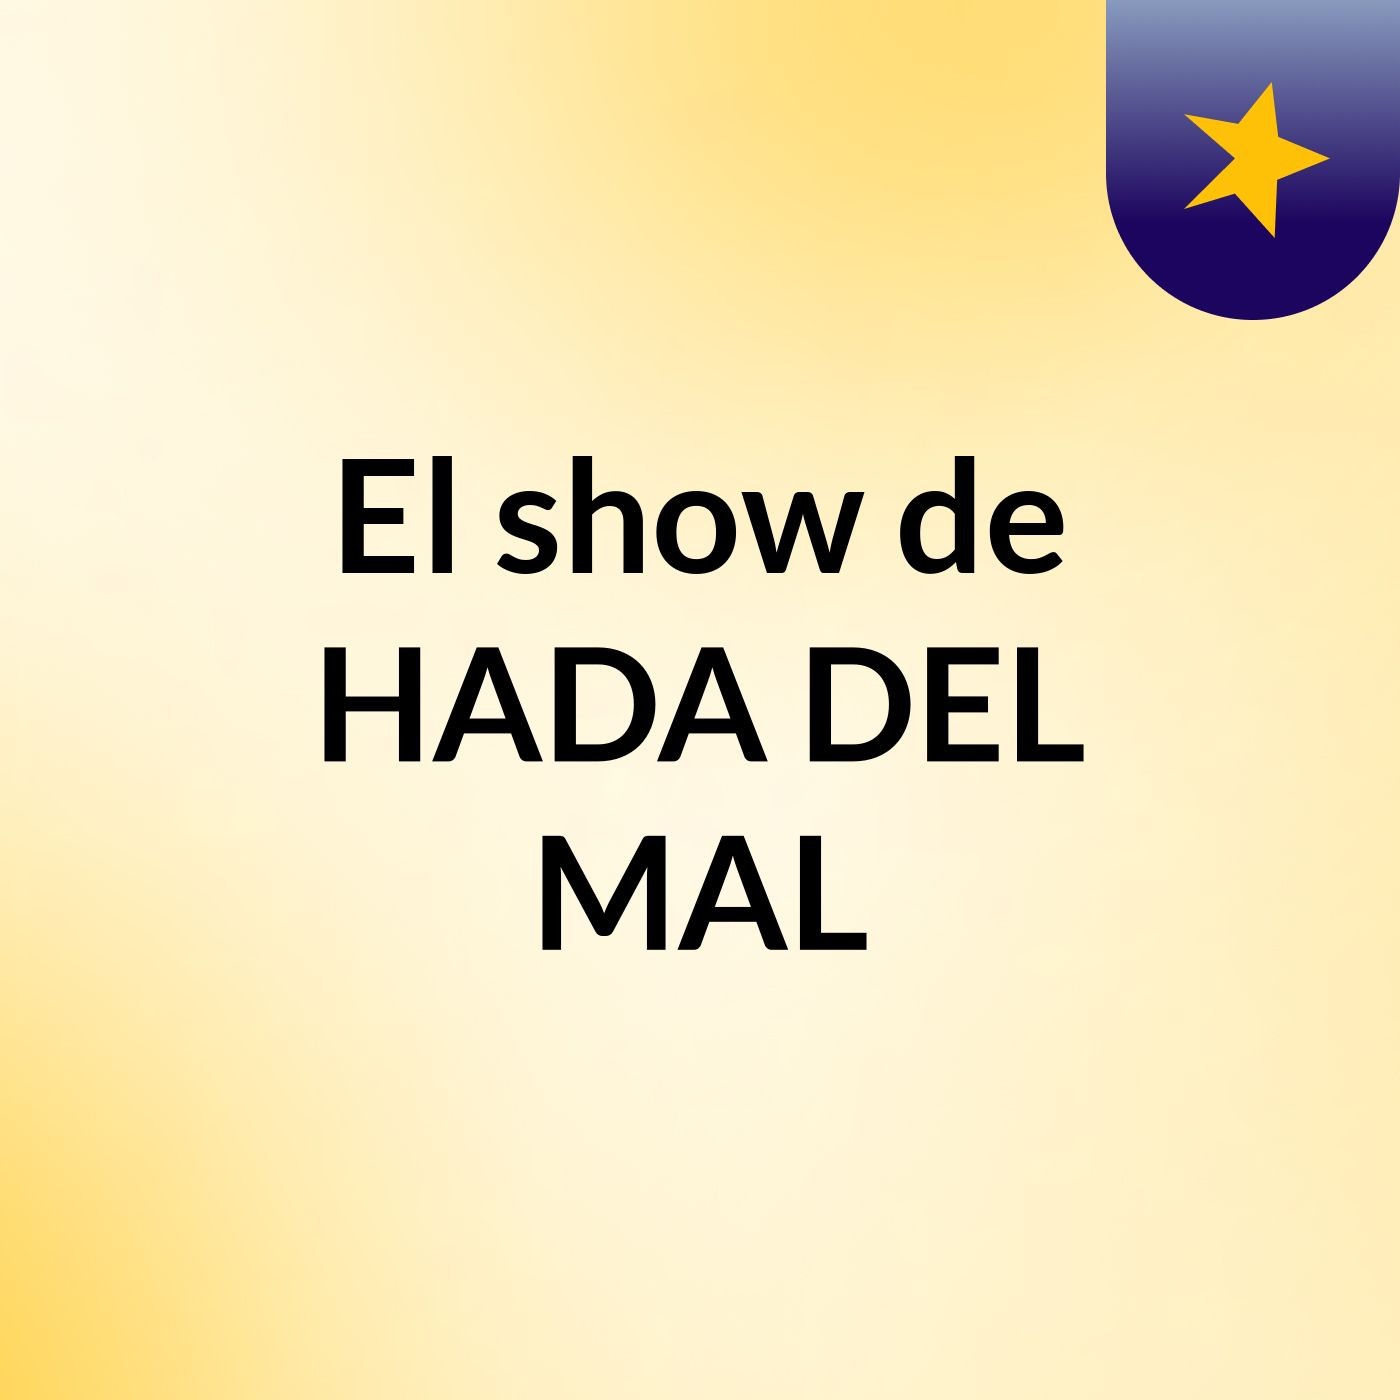 El show de HADA DEL MAL